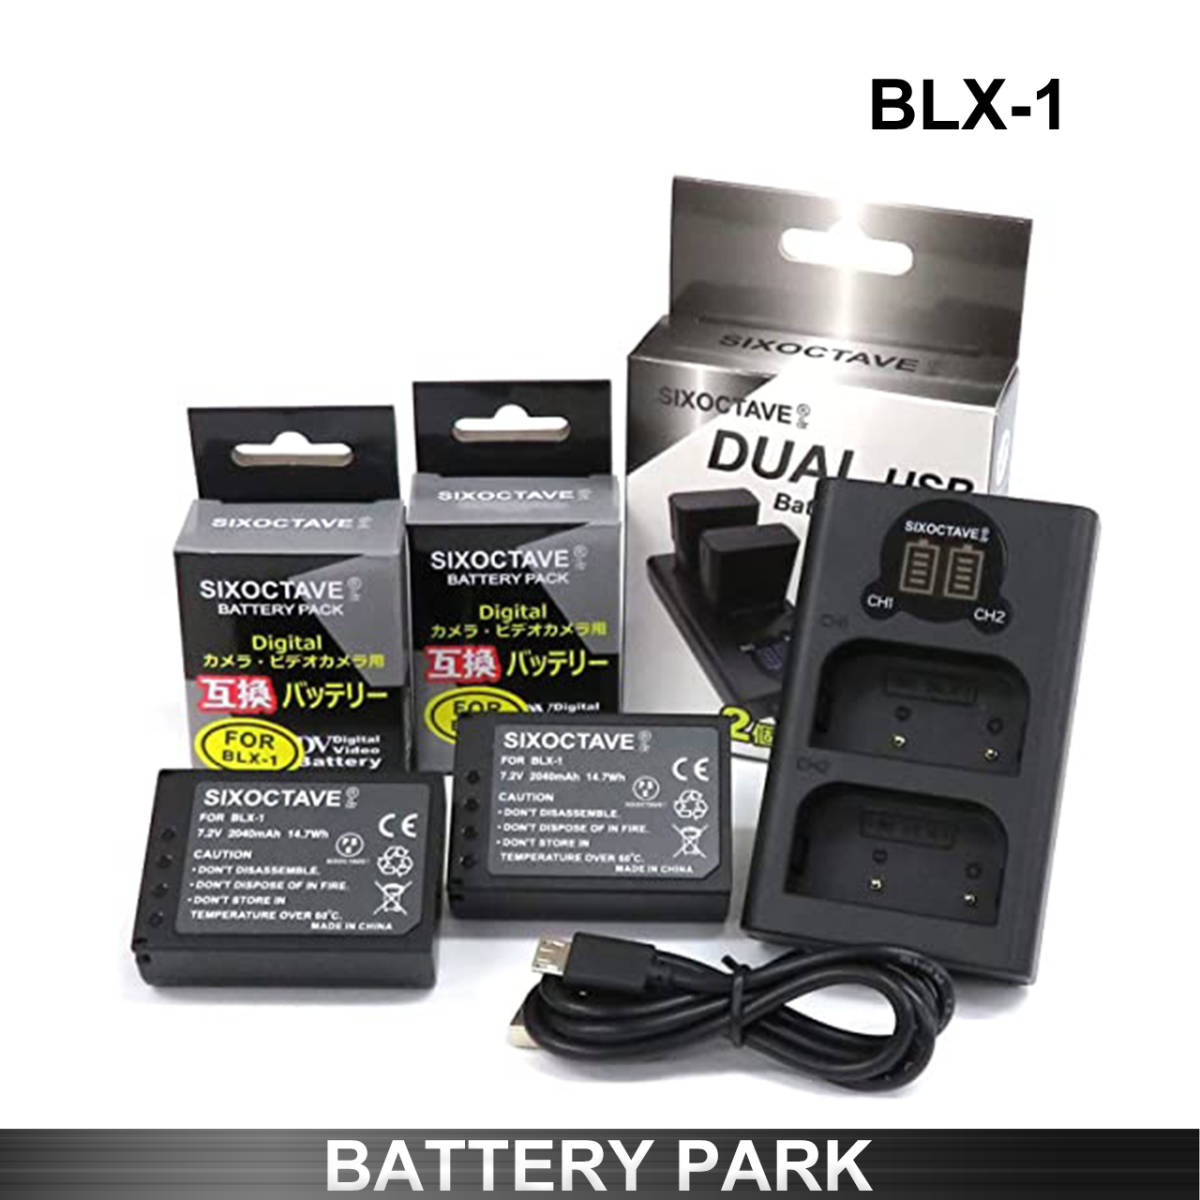 オリンパス BLX-1 対応互換バッテリー2個と互換LCD充電器 BCX-1 OM-1 MarkⅡ バッテリー2個まで同時充電可能 純正 互換電池共に対応